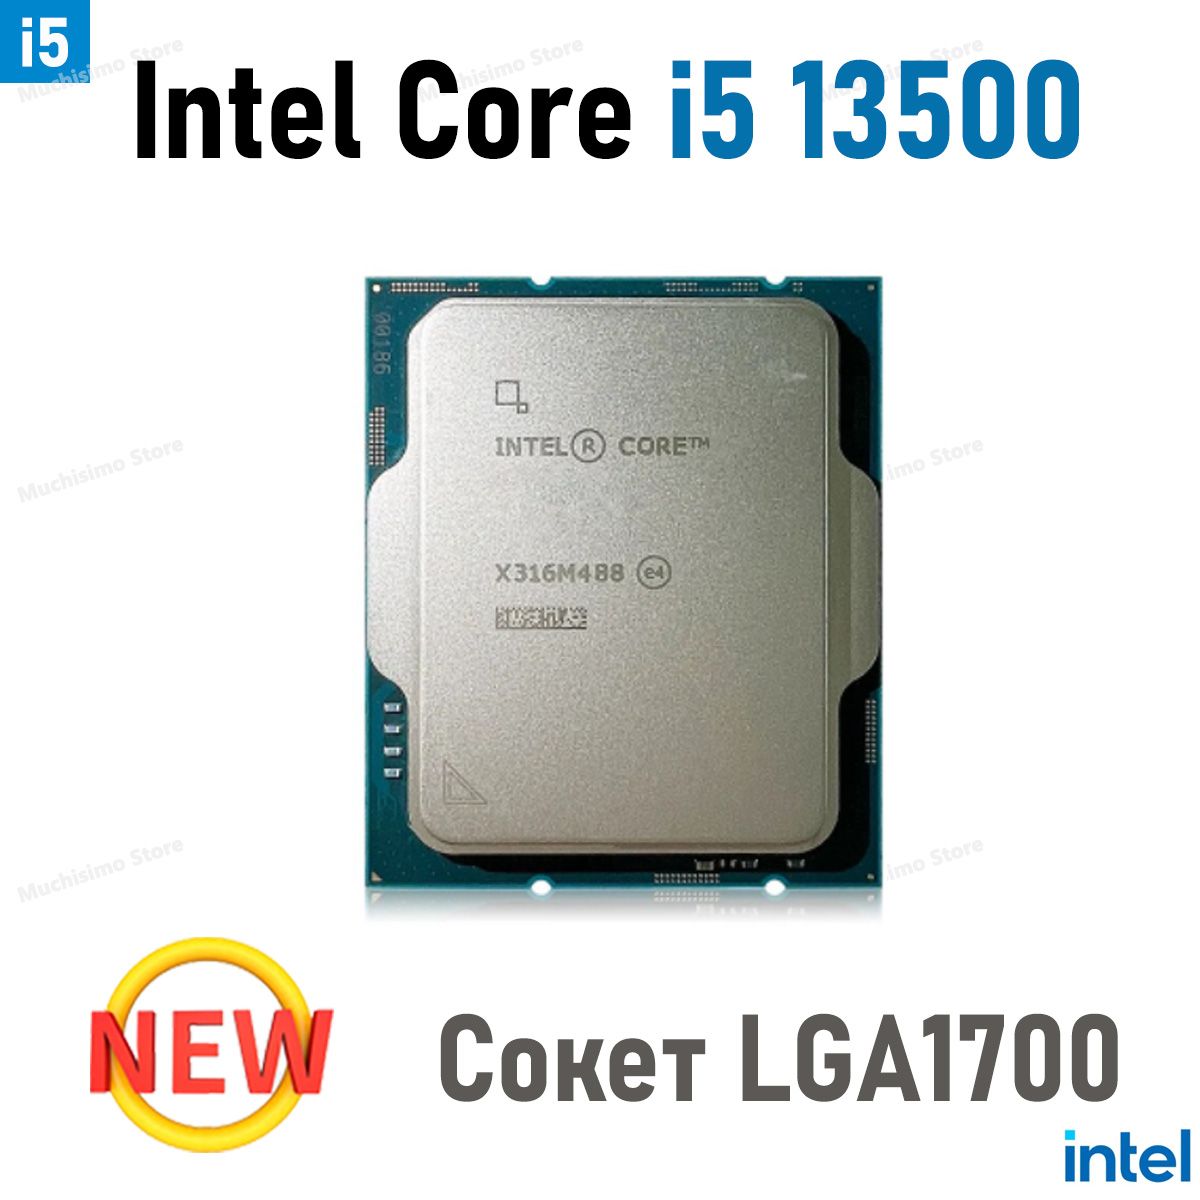 IntelПроцессорI513500OEM(безкулера)